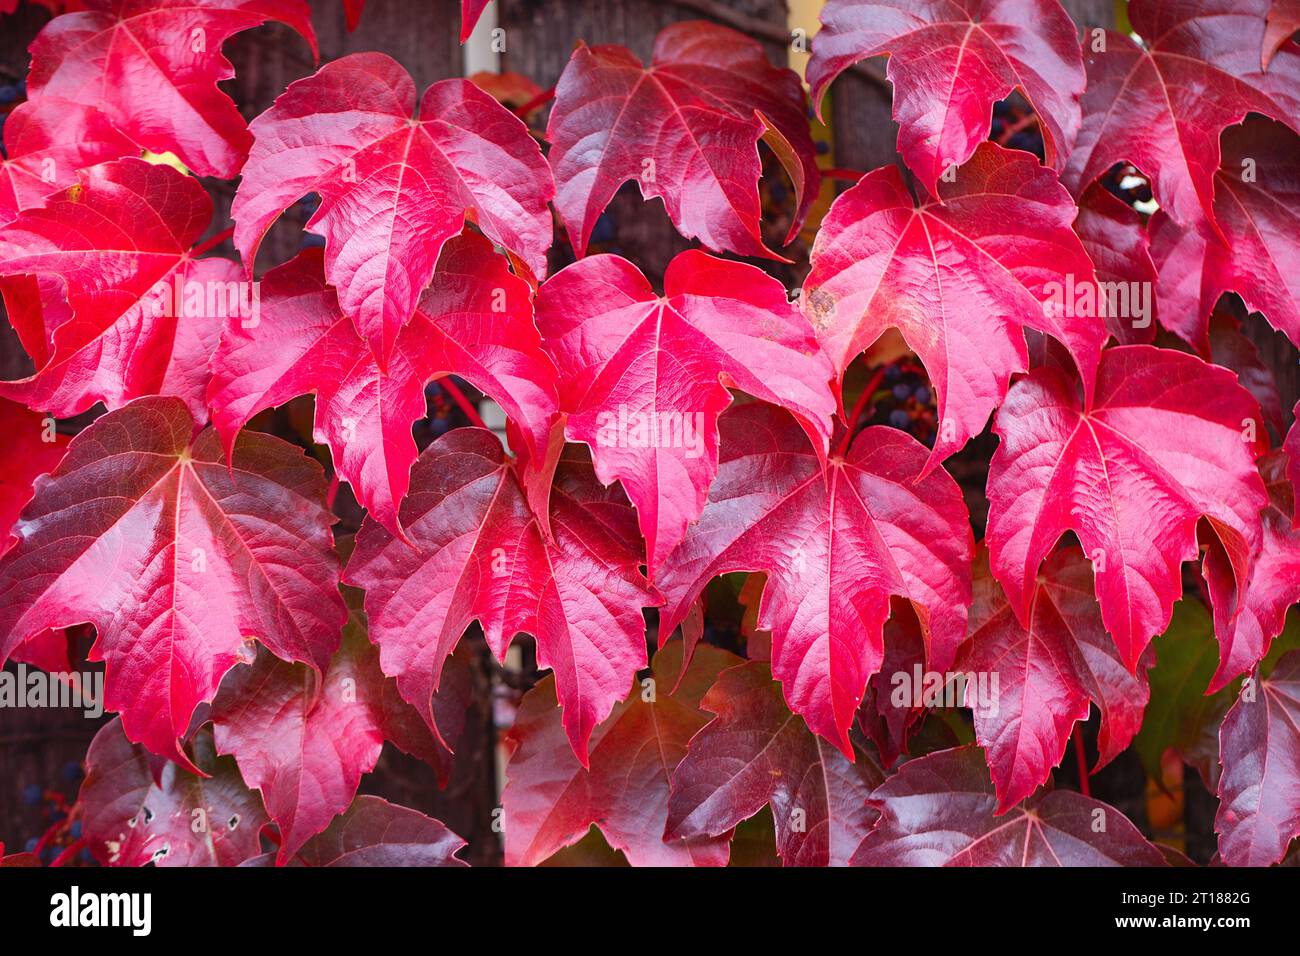 Zaun bedeckt mit roten Efeu-Herbstblättern. Herbstsaison, oktober. Rote Herbstelffeublätter an der Wand, Hintergrund. Rote Blätter von Jungtrauben, Herbstfarbe Stockfoto